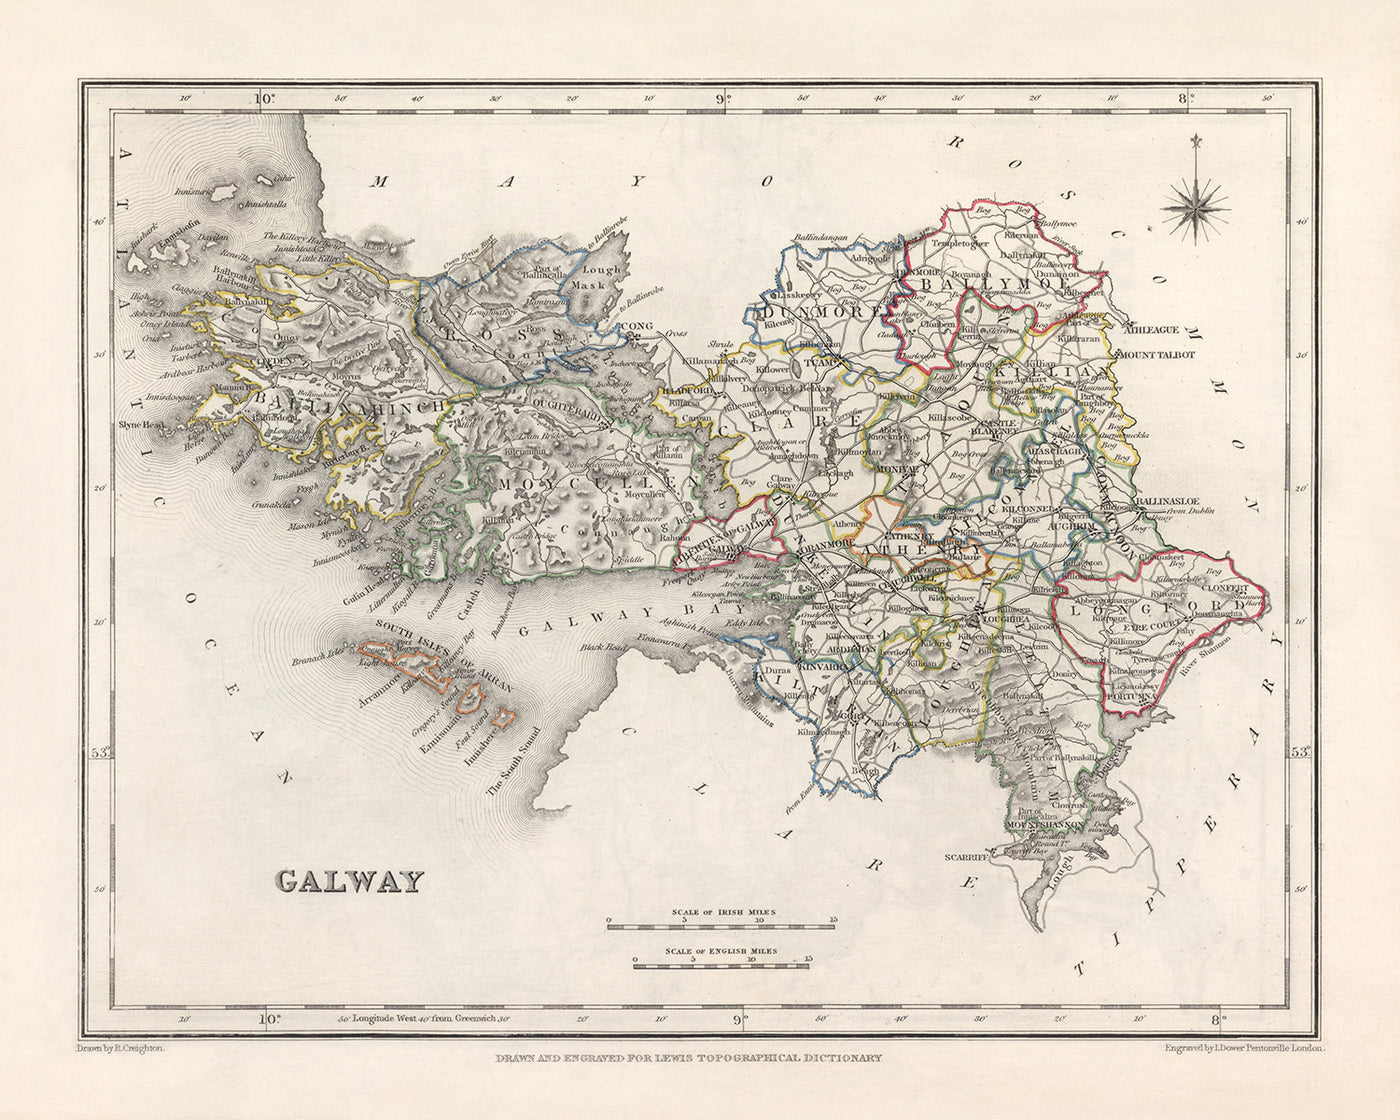 Mapa antiguo del condado de Galway por Samuel Lewis, 1844: Atenas, Ballinasloe, Clifden, Gort, Loughrea